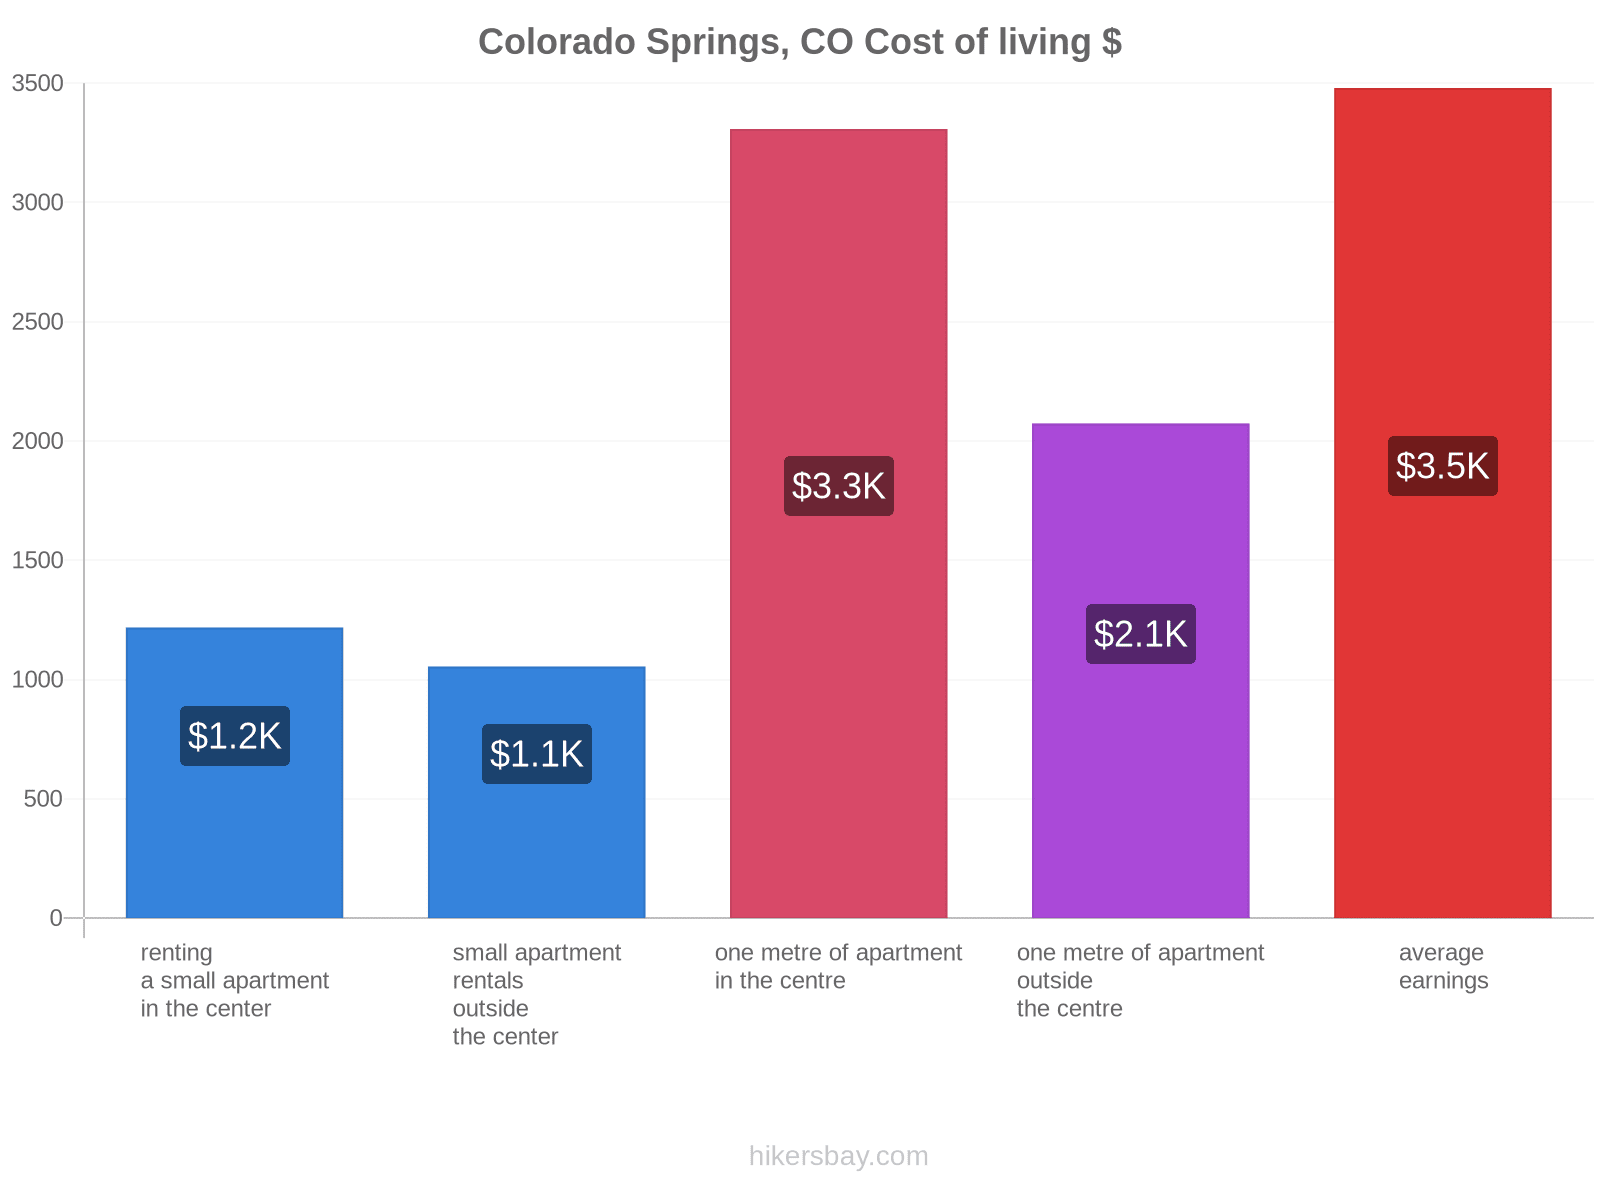 Colorado Springs, CO cost of living hikersbay.com